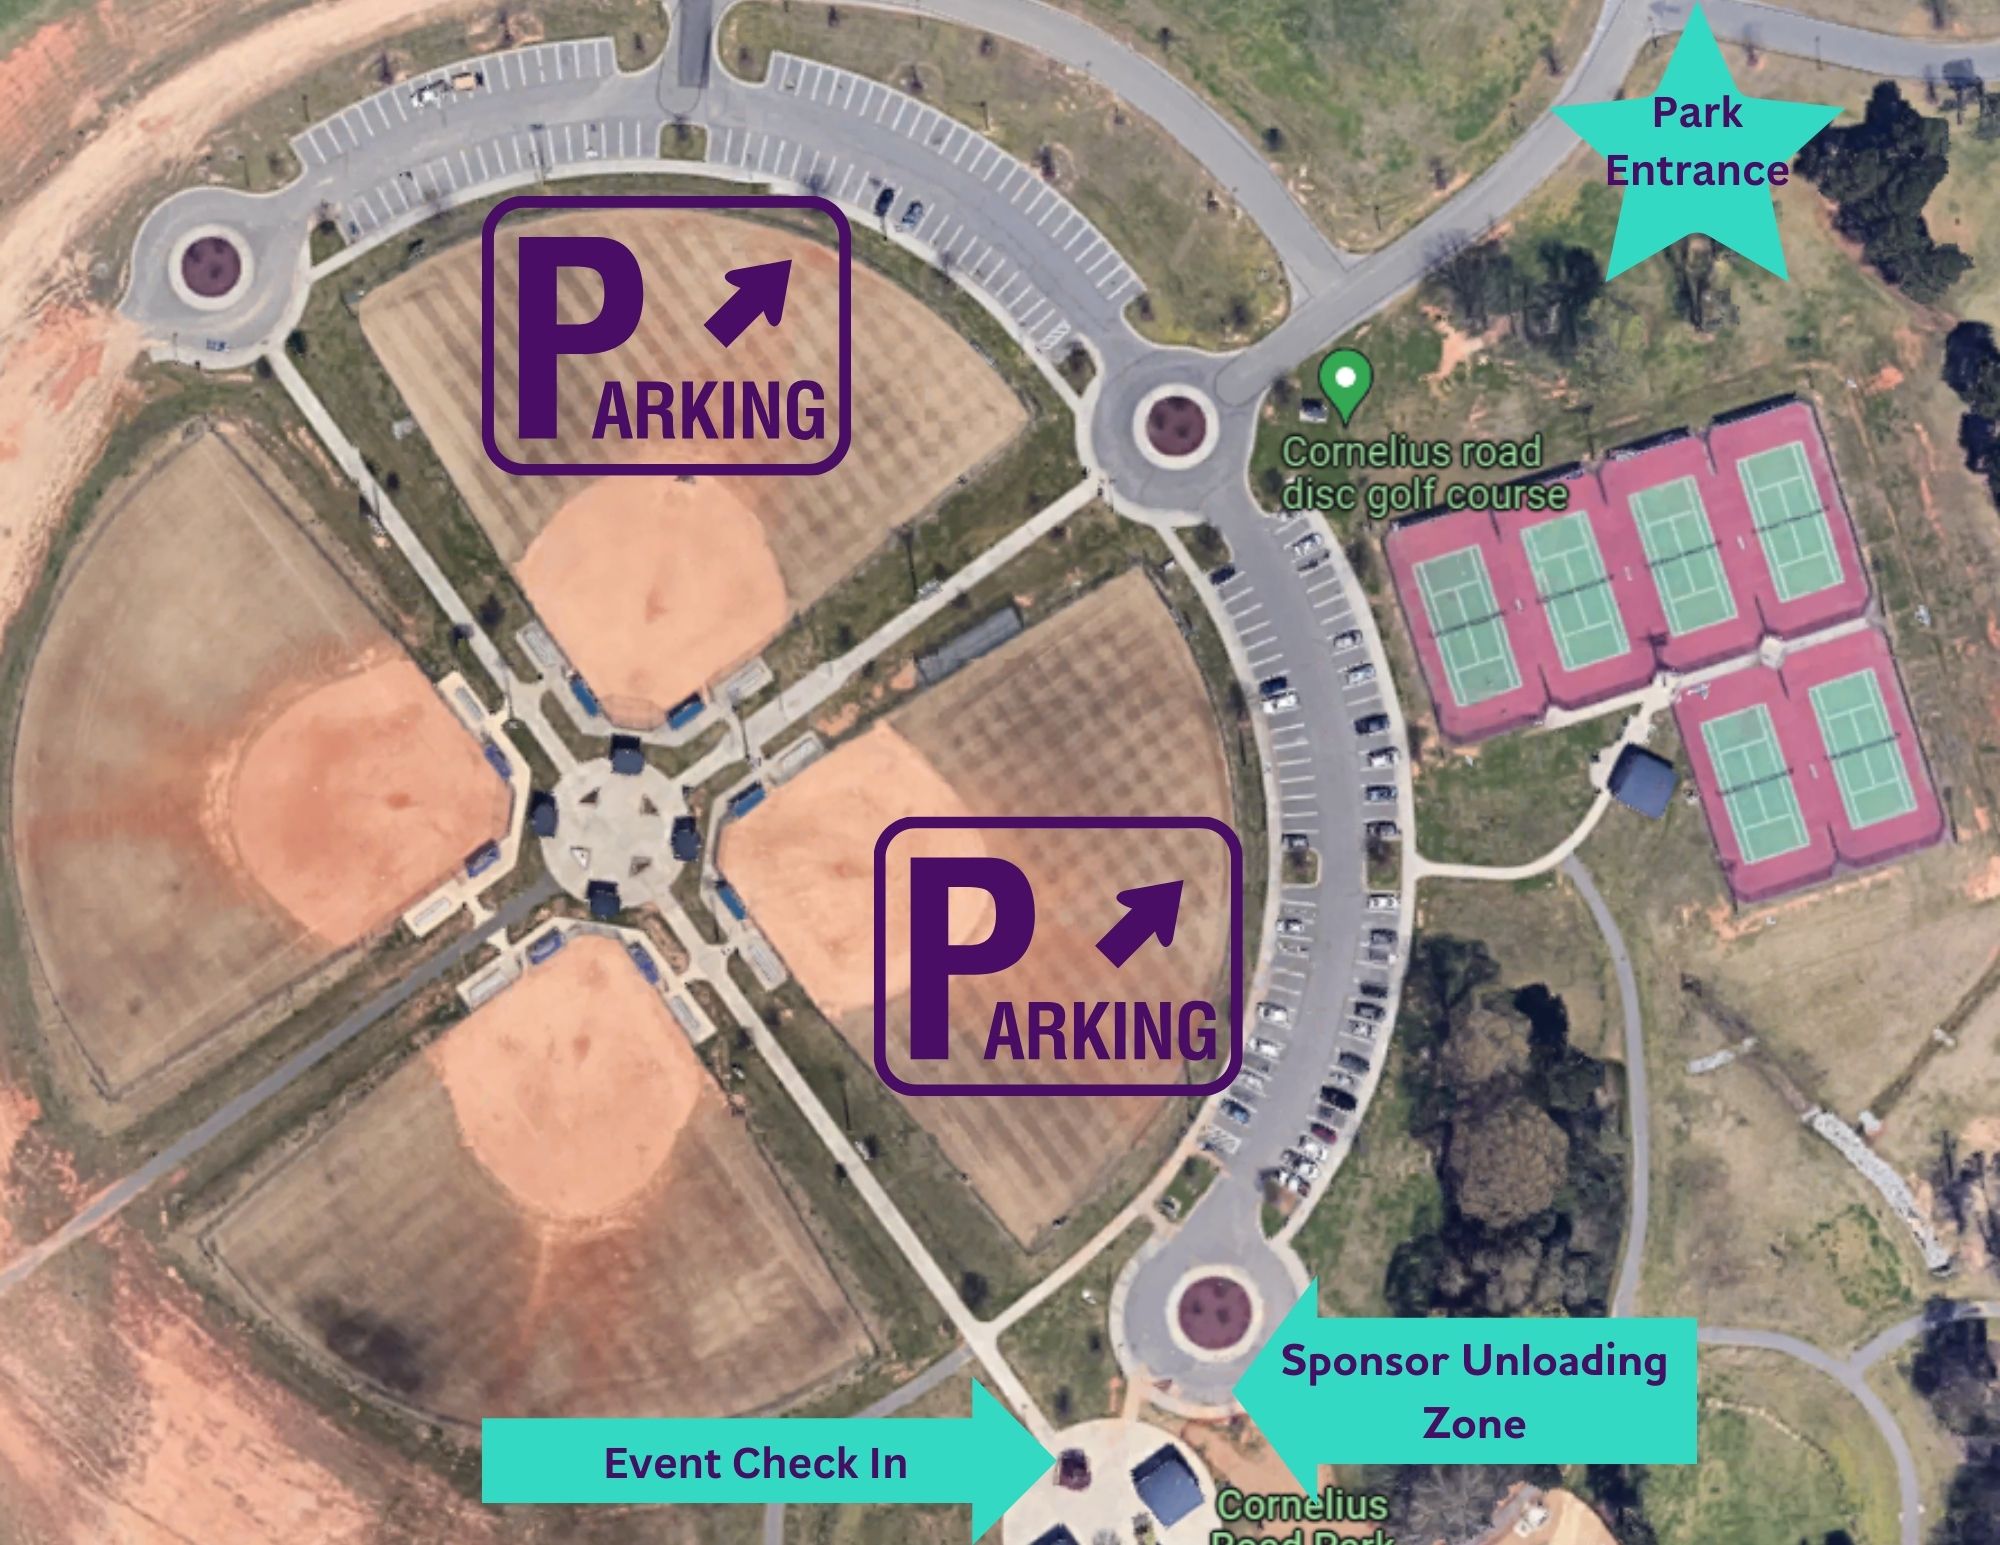 Mapa de estacionamiento.jpg